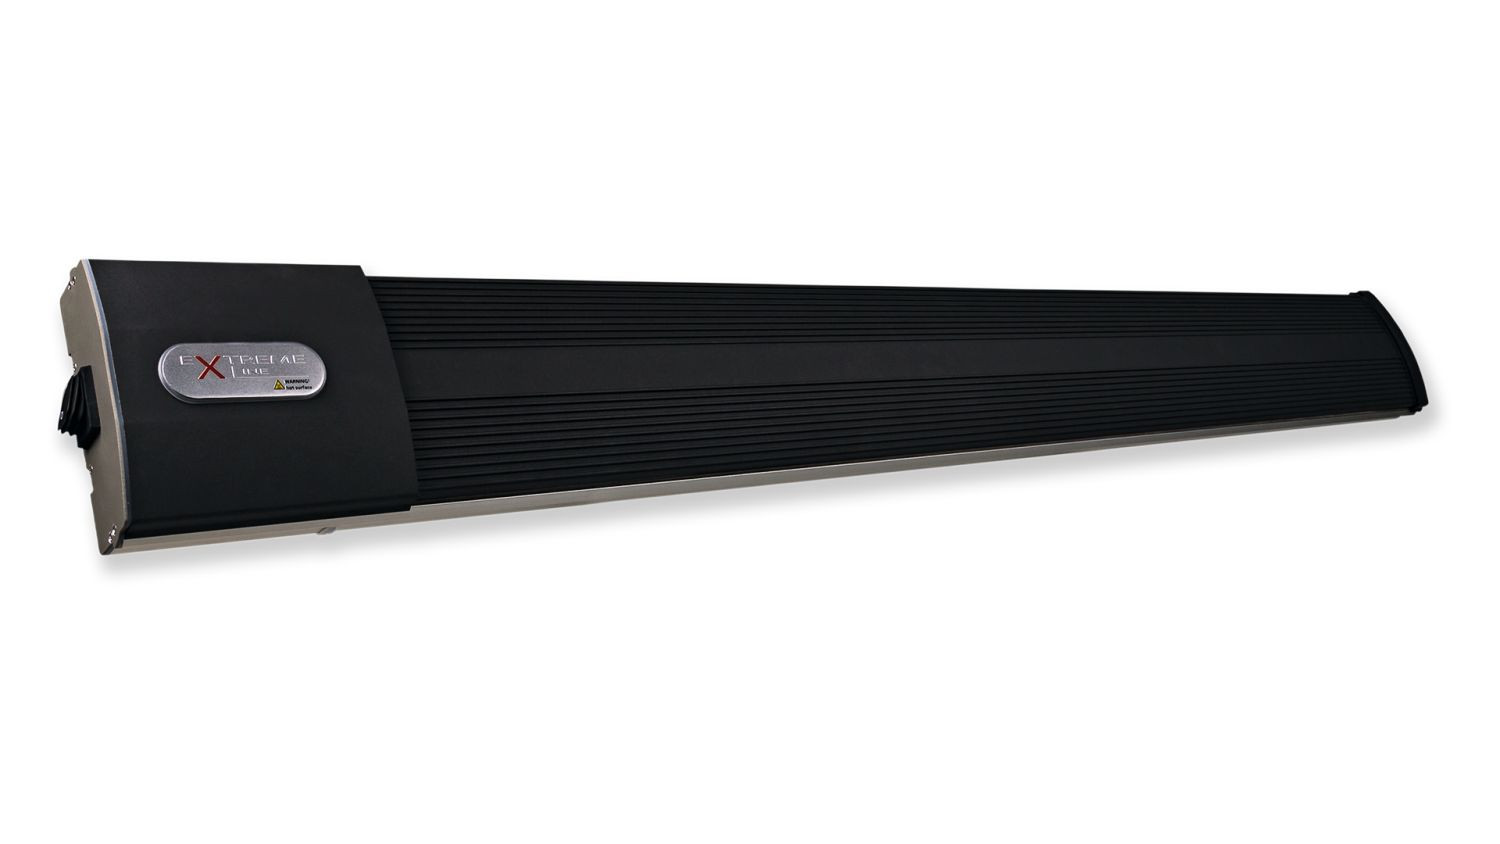 HeatZone black 2400 W Heizstrahler Infrarotstrahler Dunkelstrahler (ohne Steuerung), dieser Dunkelstrahler liefert perfekte Wohlfühlwärme